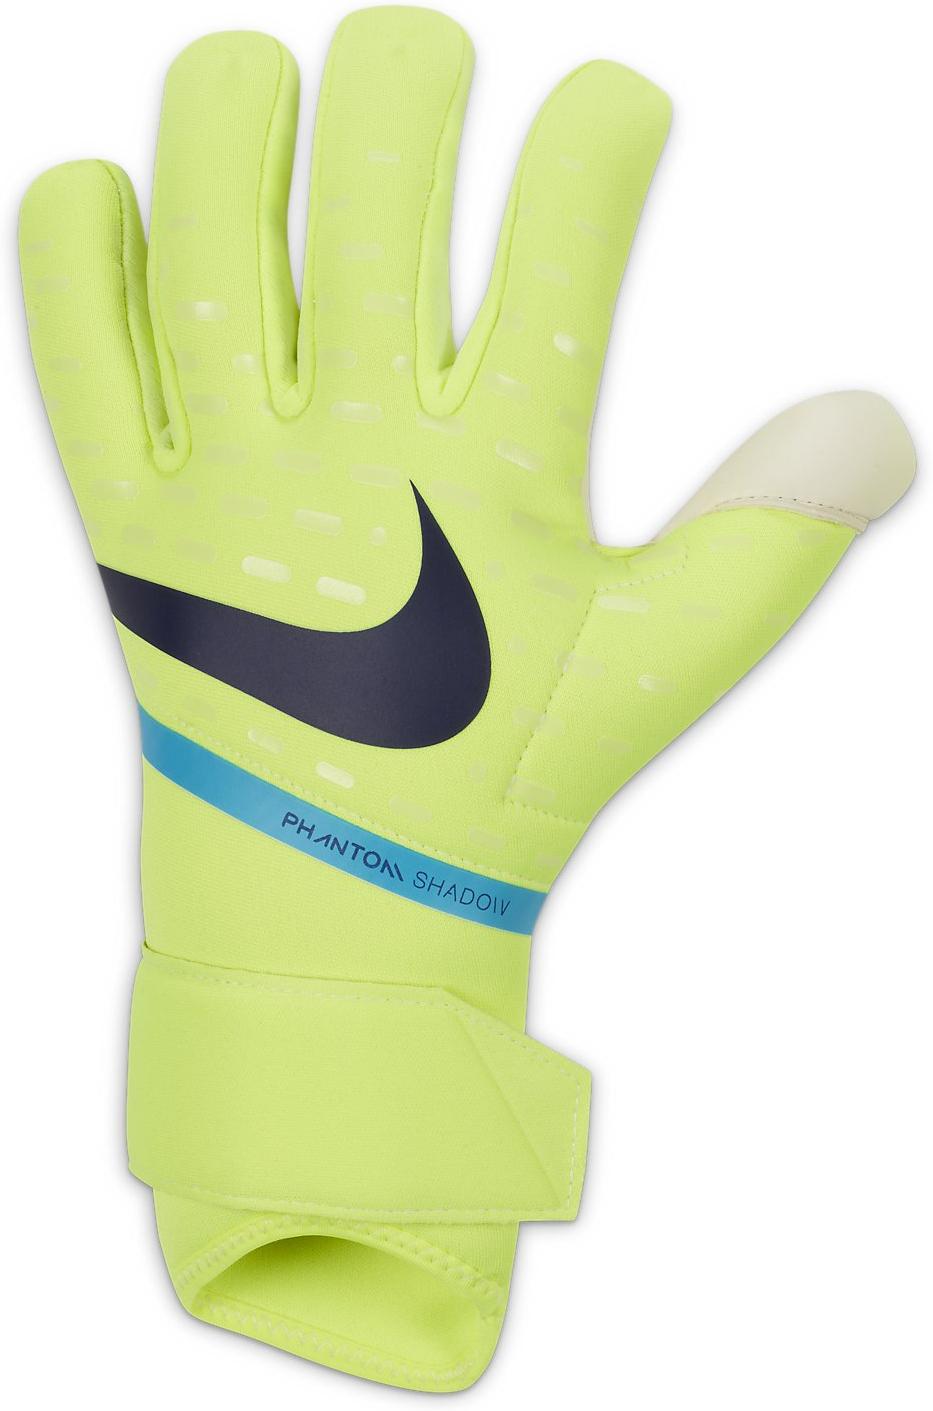 Goalkeeper's gloves Nike NK GK PHANTOM SHADOW